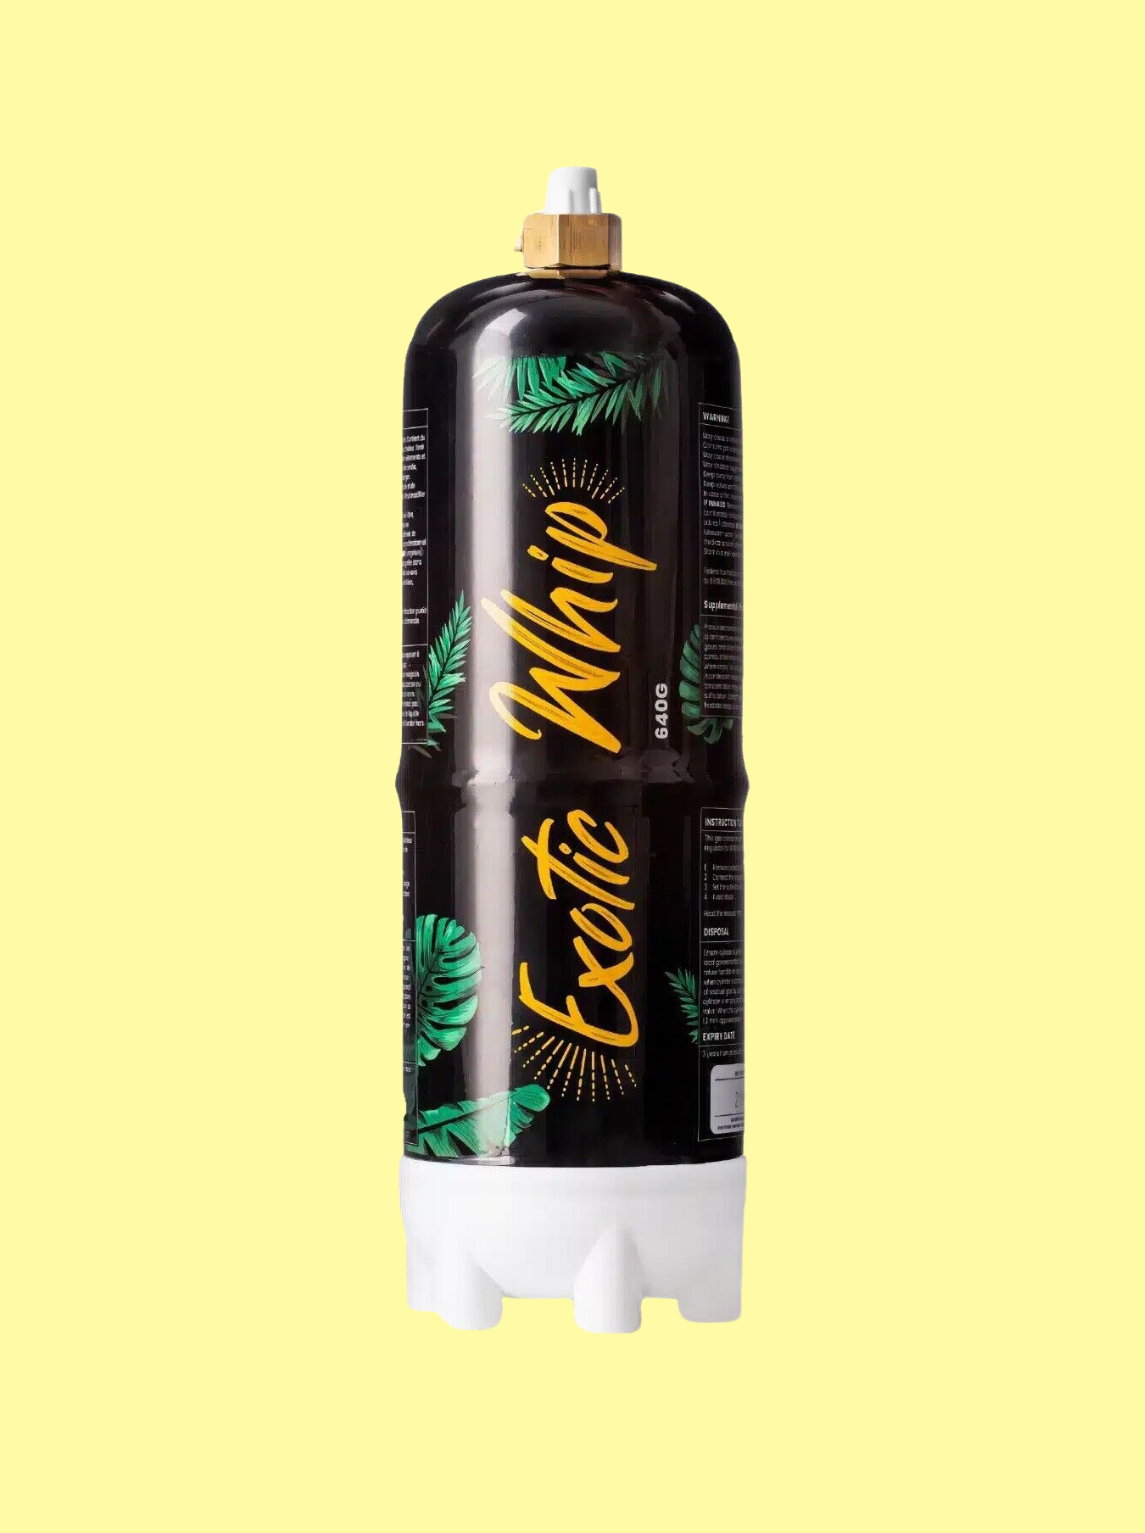 Die Gasflasche ist schwarz, mit dem gelben Logo "Exotic Whip" 670g. Auf der Flasche sind grüne Blätter und einem weißen Unterteil. Der Hintergrund ist hellgelb.